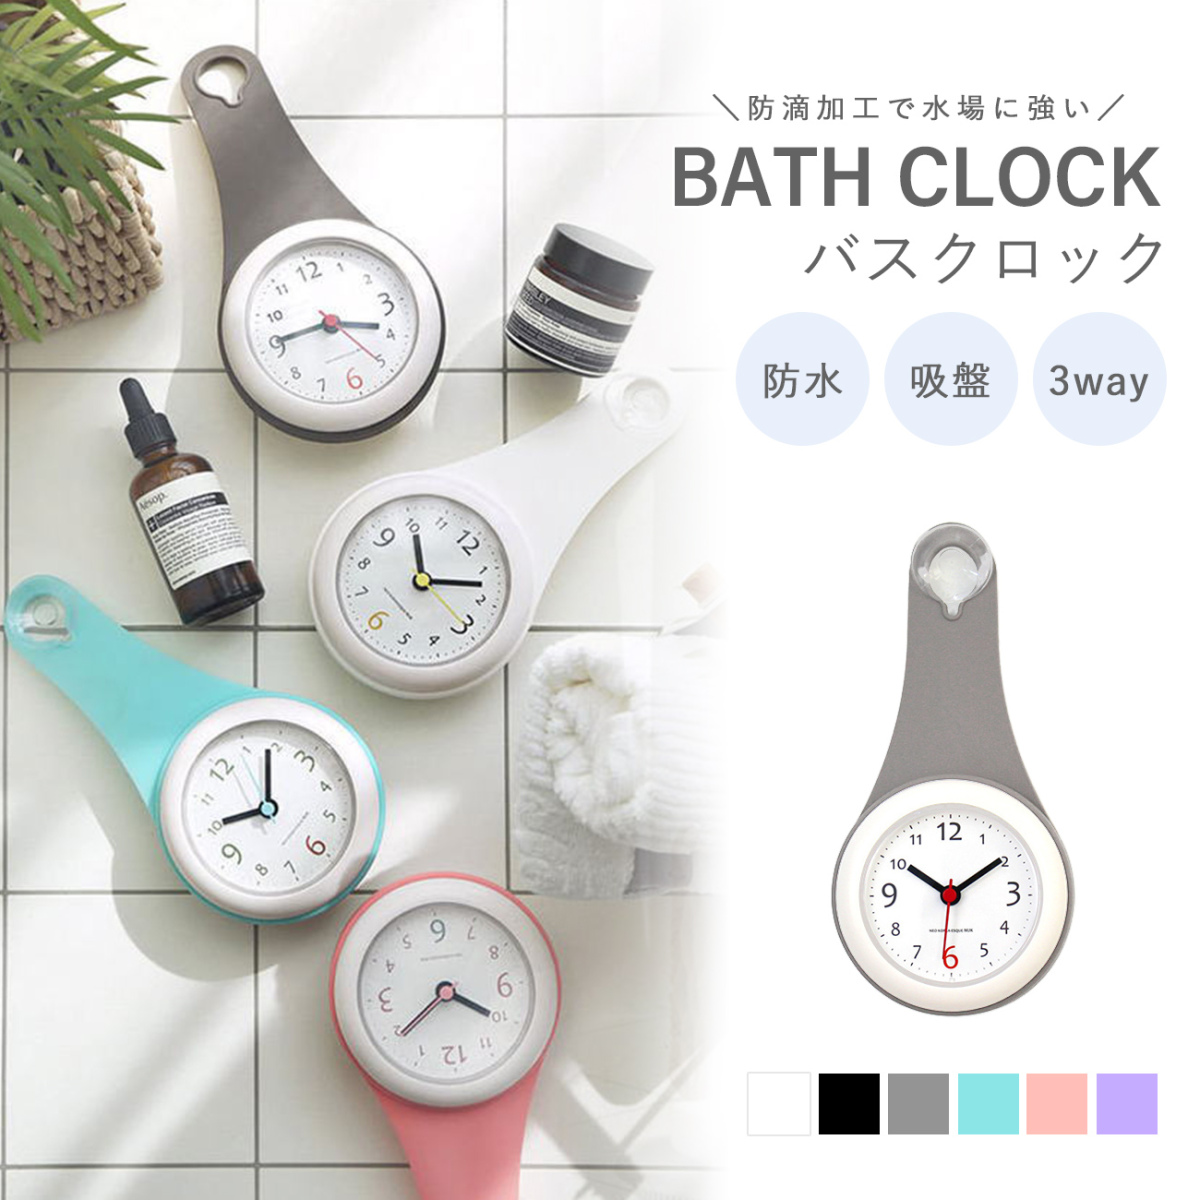 バスクロック 吸盤付き ピンク バスルーム 浴室用時計 お風呂 時計 キッチン